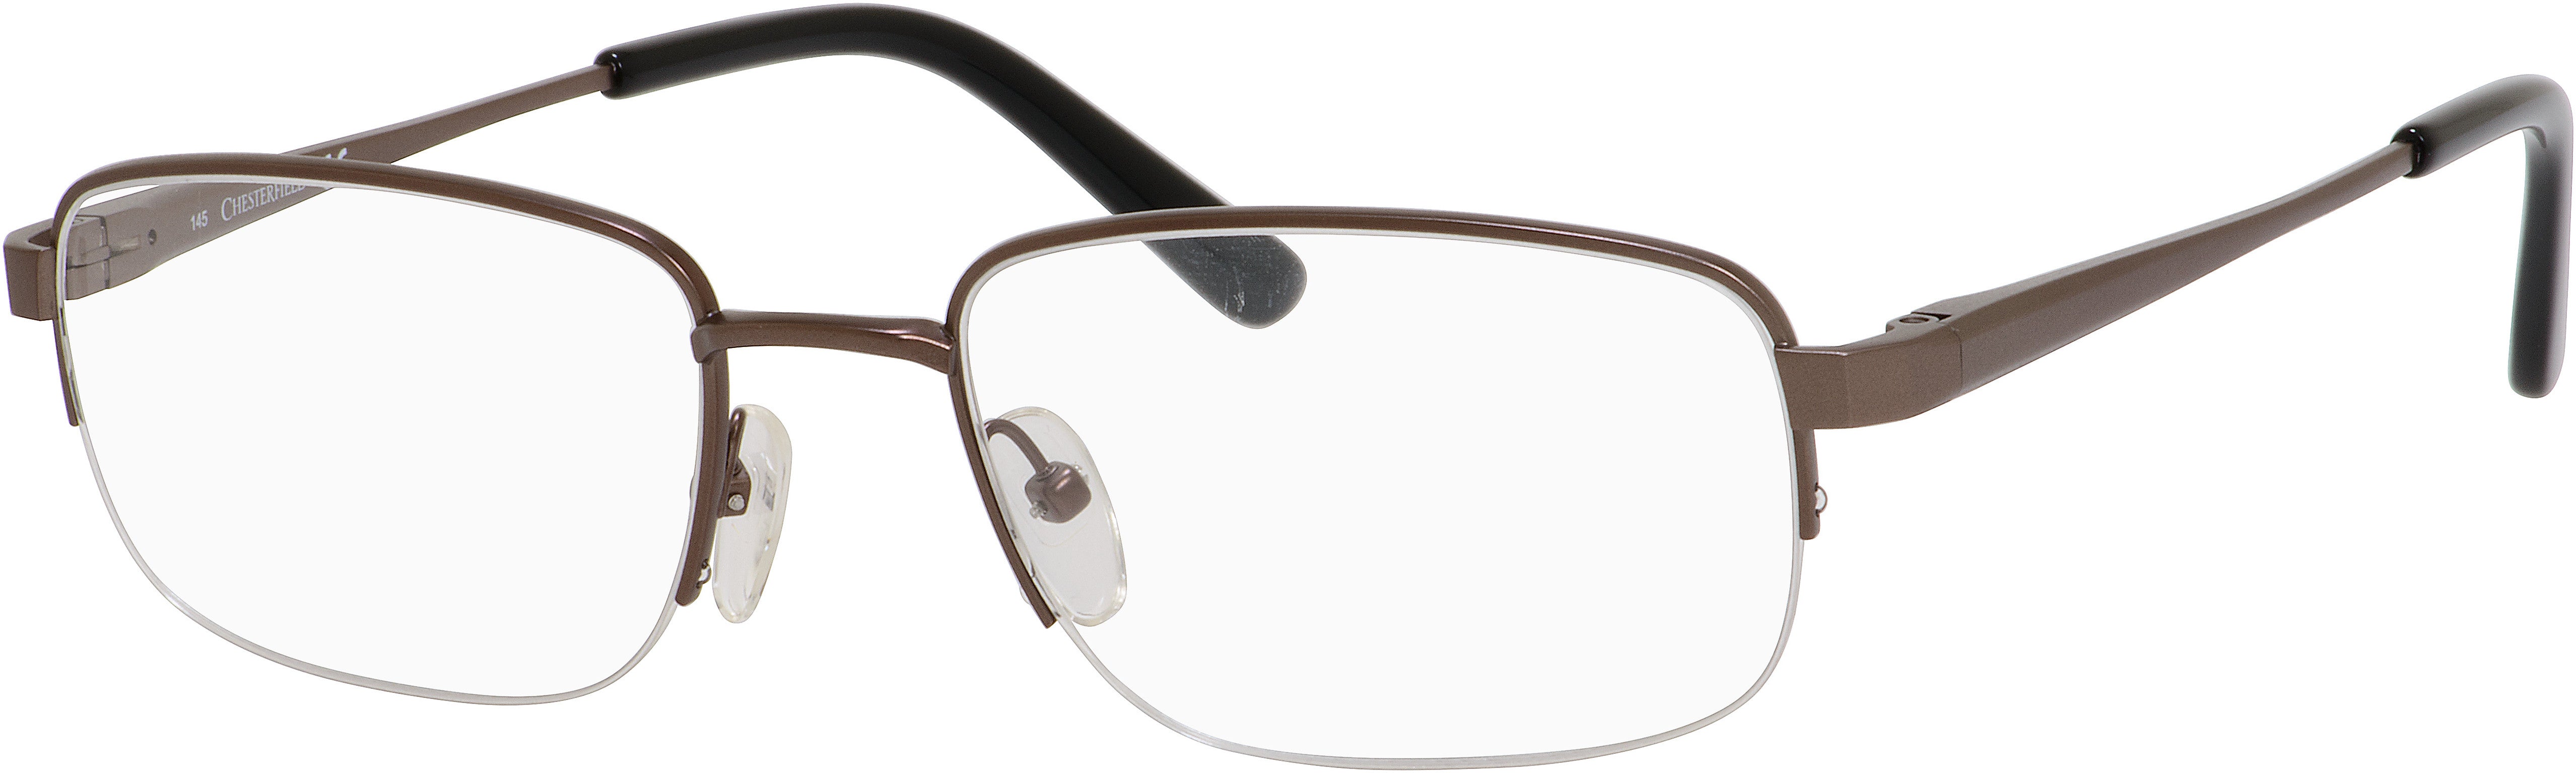  Chesterfield 869/T Rectangular Eyeglasses 0EX1-0EX1  Gunmetal (00 Demo Lens)